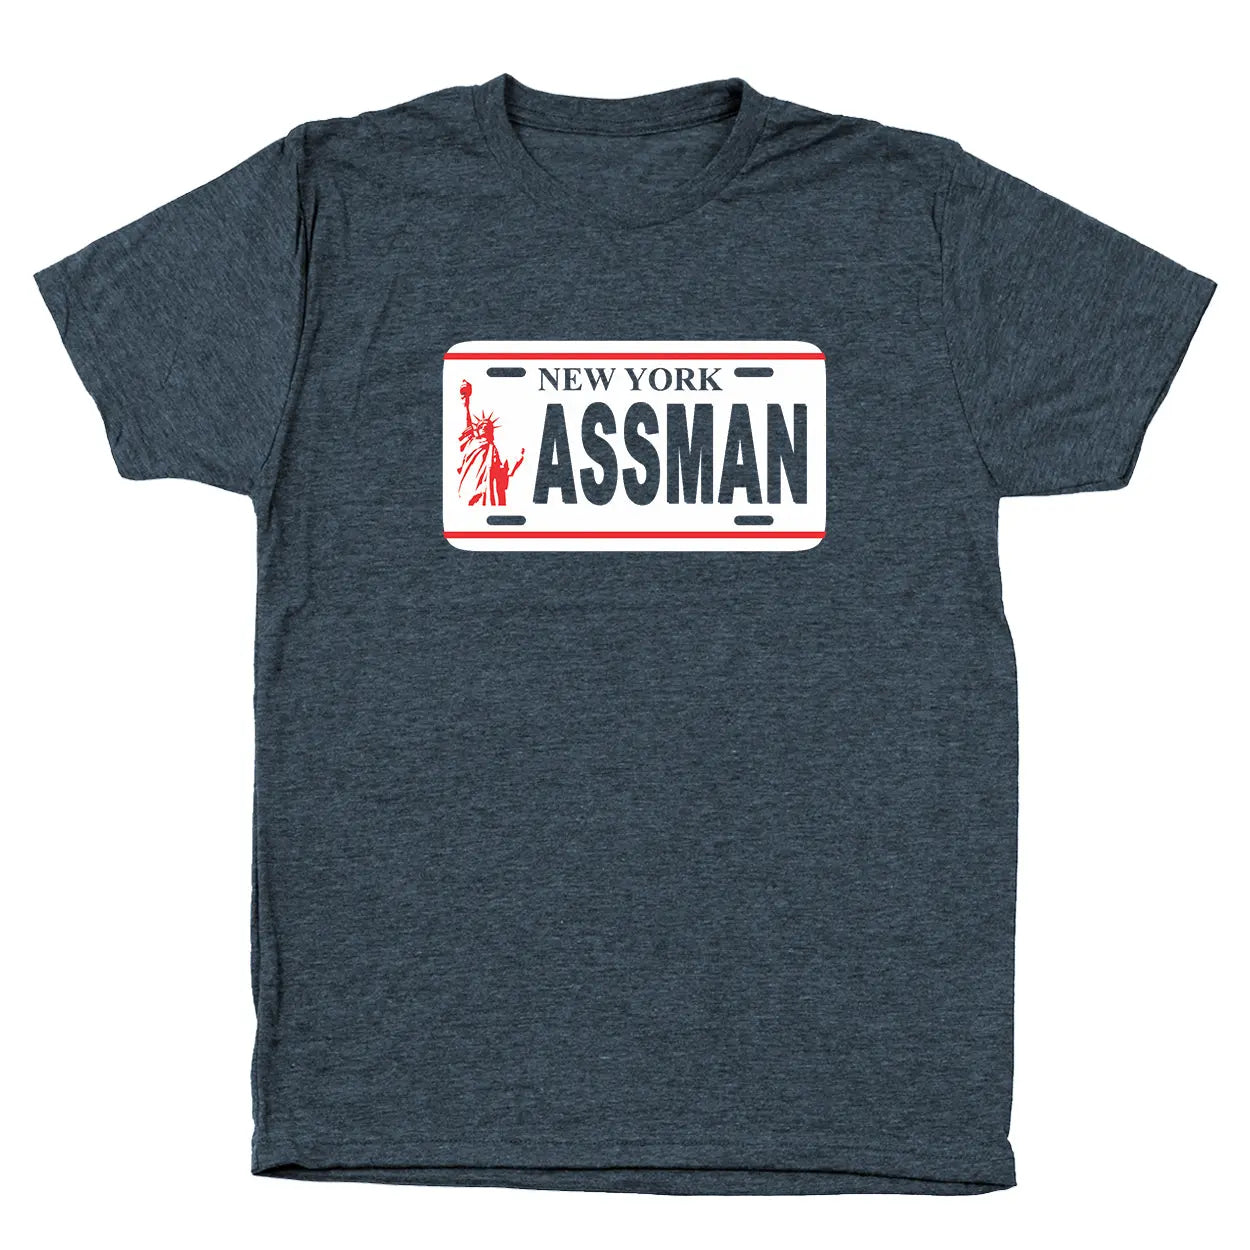 The Assman